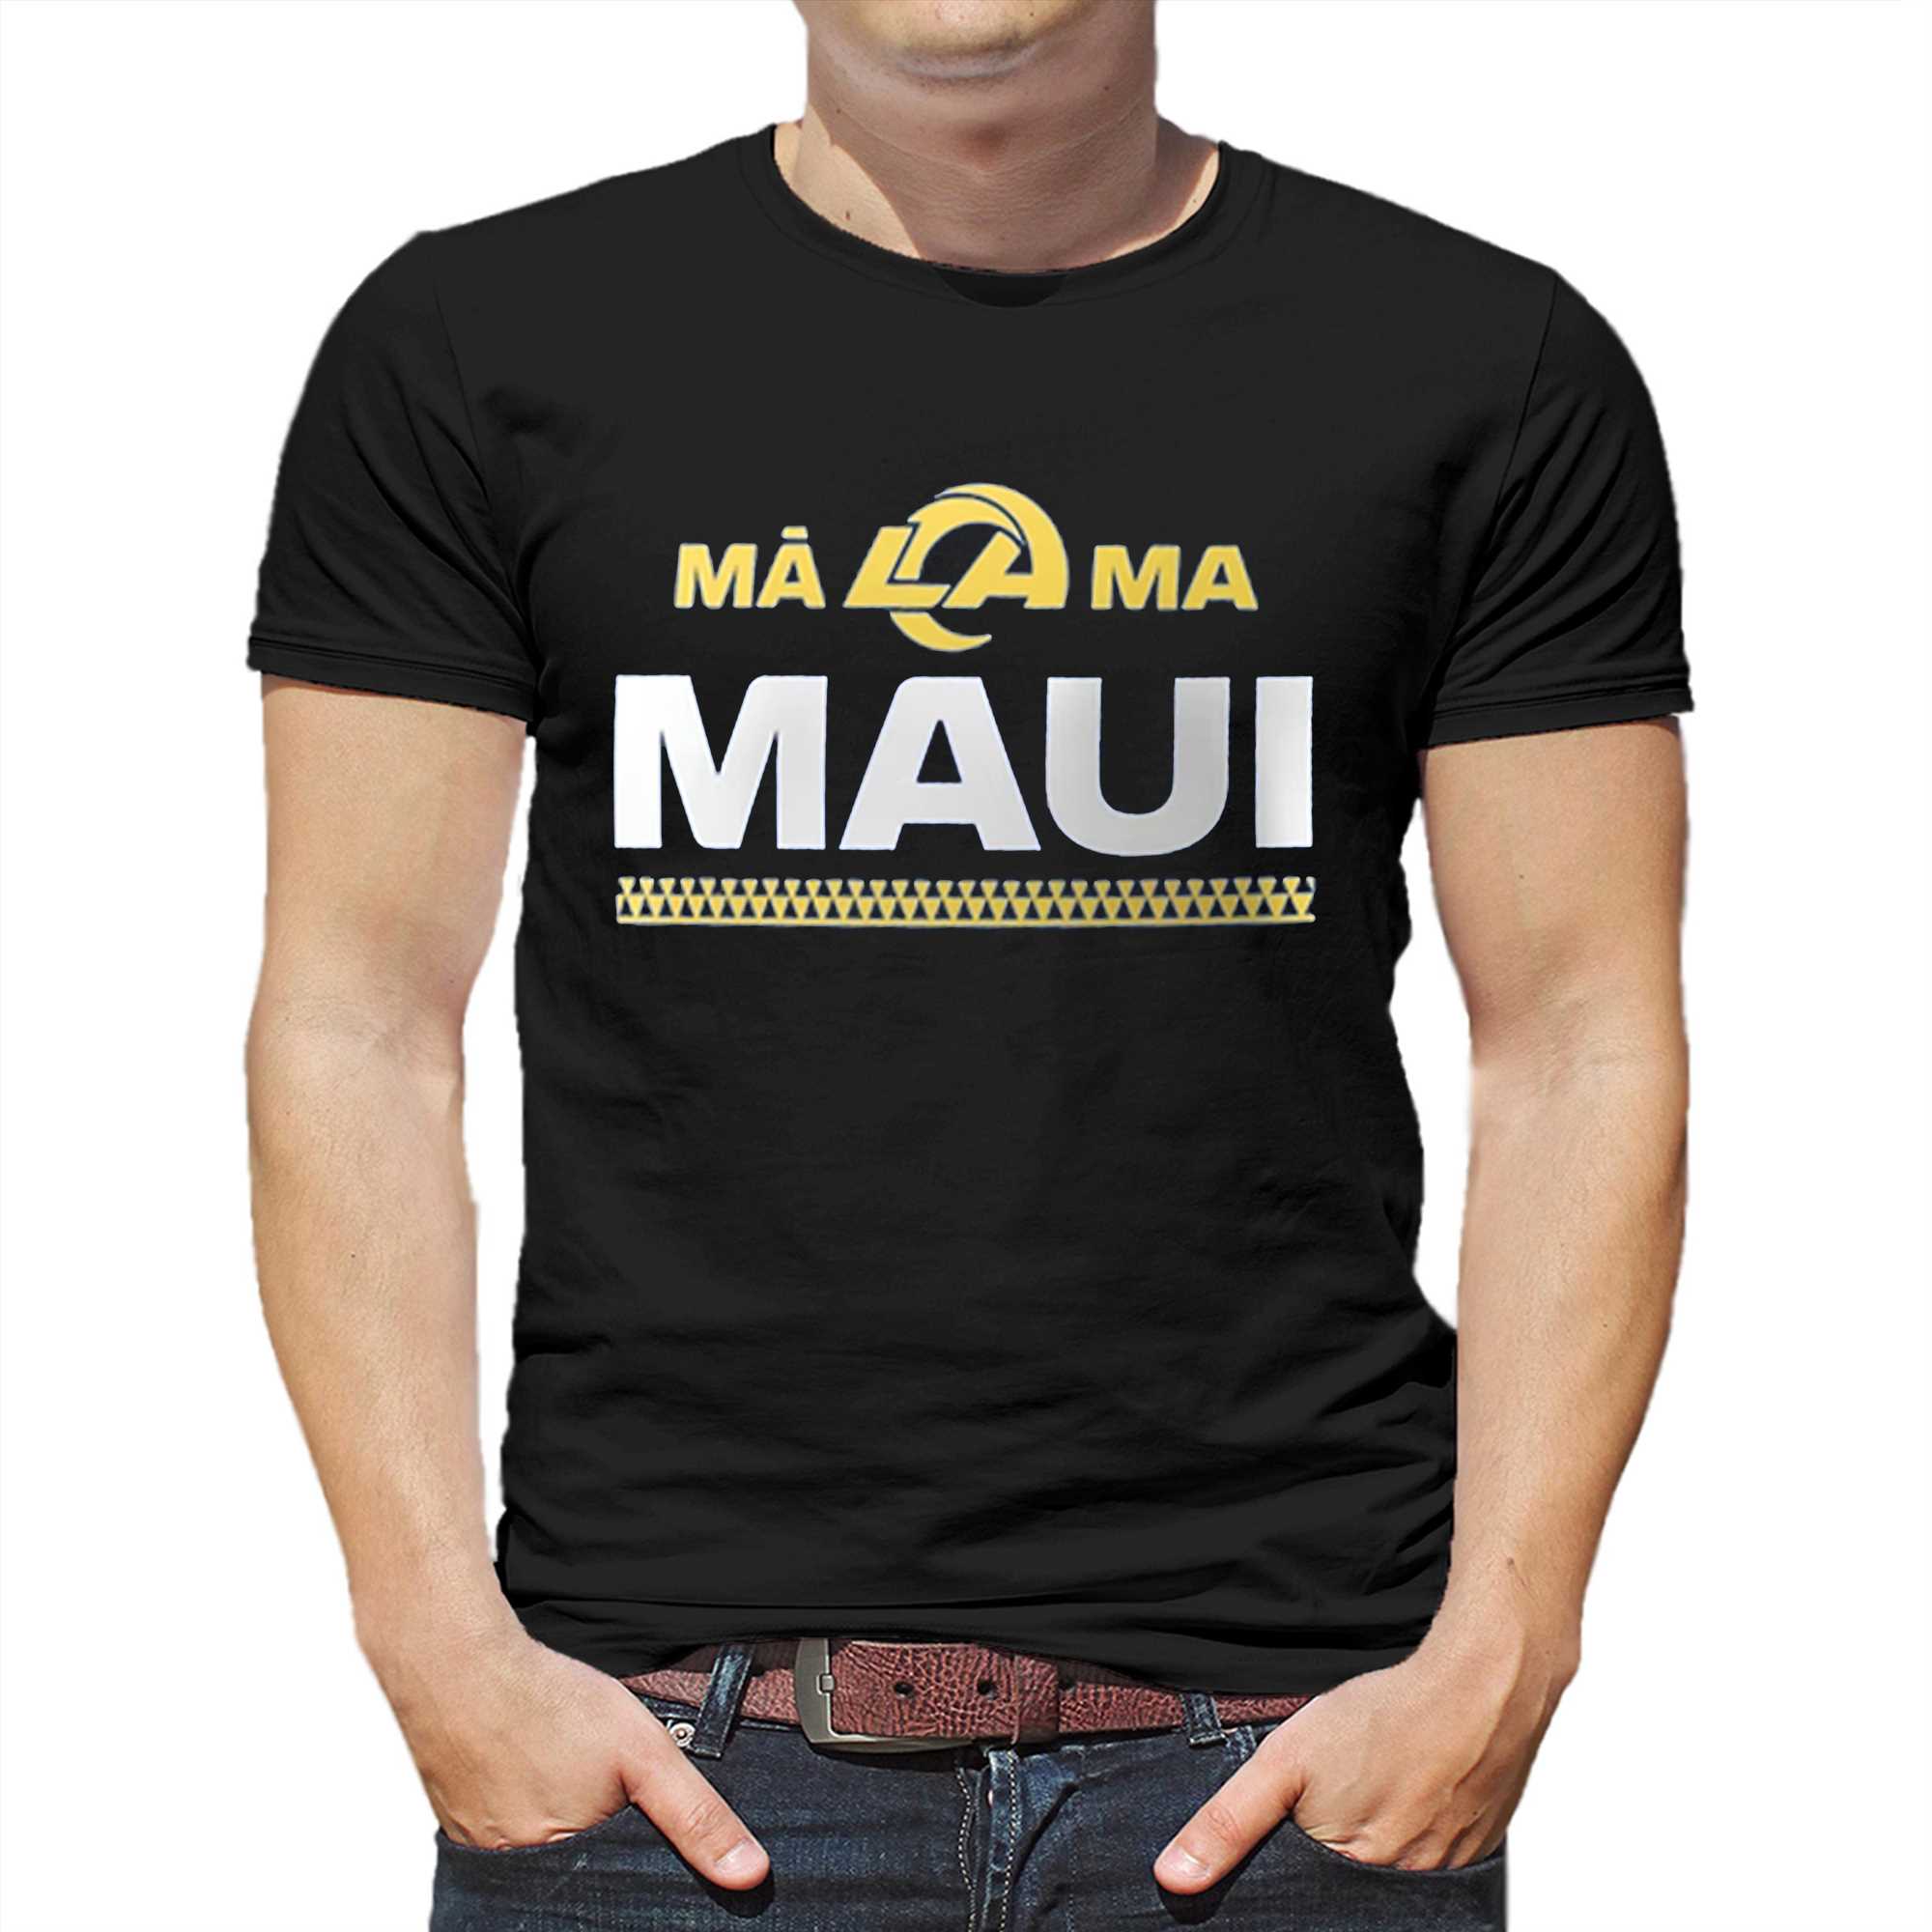 Los Angeles Rams Malama Maui Shirt - Shibtee Clothing